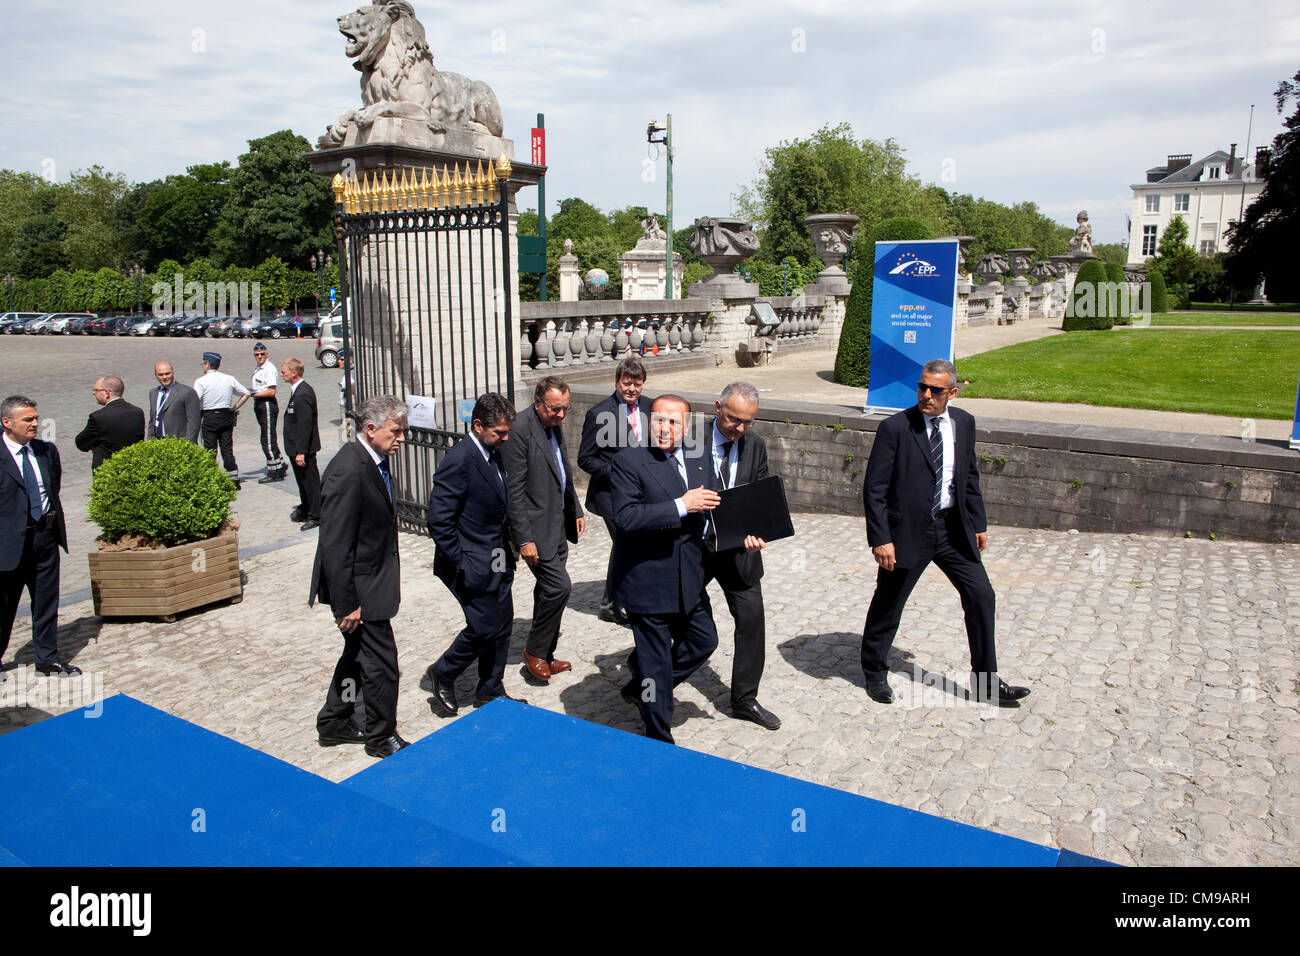 Académie Royal de Belgique a Bruxelles. 28.06.2012 Foto mostra Silvio Berlusconi arrivando a Europoean del Partito popolare nella riunione di Bruxelles, all' Academie Royal de Belgique. Foto Stock